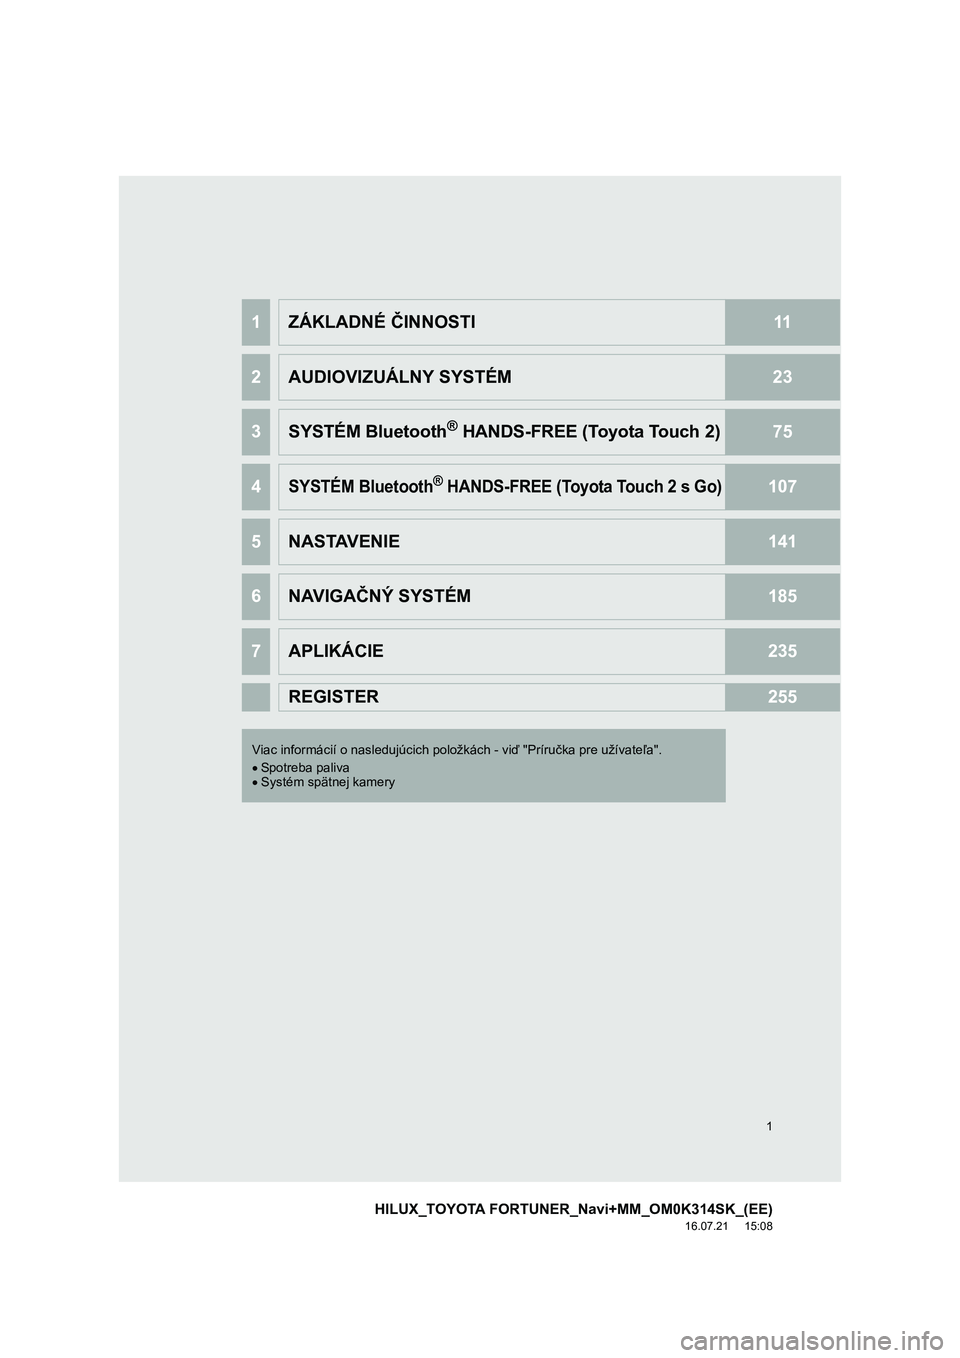 TOYOTA HILUX 2017  Návod na použitie (in Slovakian) 1
HILUX_TOYOTA FORTUNER_Navi+MM_OM0K314SK_(EE)
16.07.21     15:08
1ZÁKLADNÉ ČINNOSTI11
2AUDIOVIZUÁLNY SYSTÉM23
3SYSTÉM Bluetooth® HANDS-FREE (Toyota Touch 2)75
4SYSTÉM Bluetooth® HANDS-FREE (